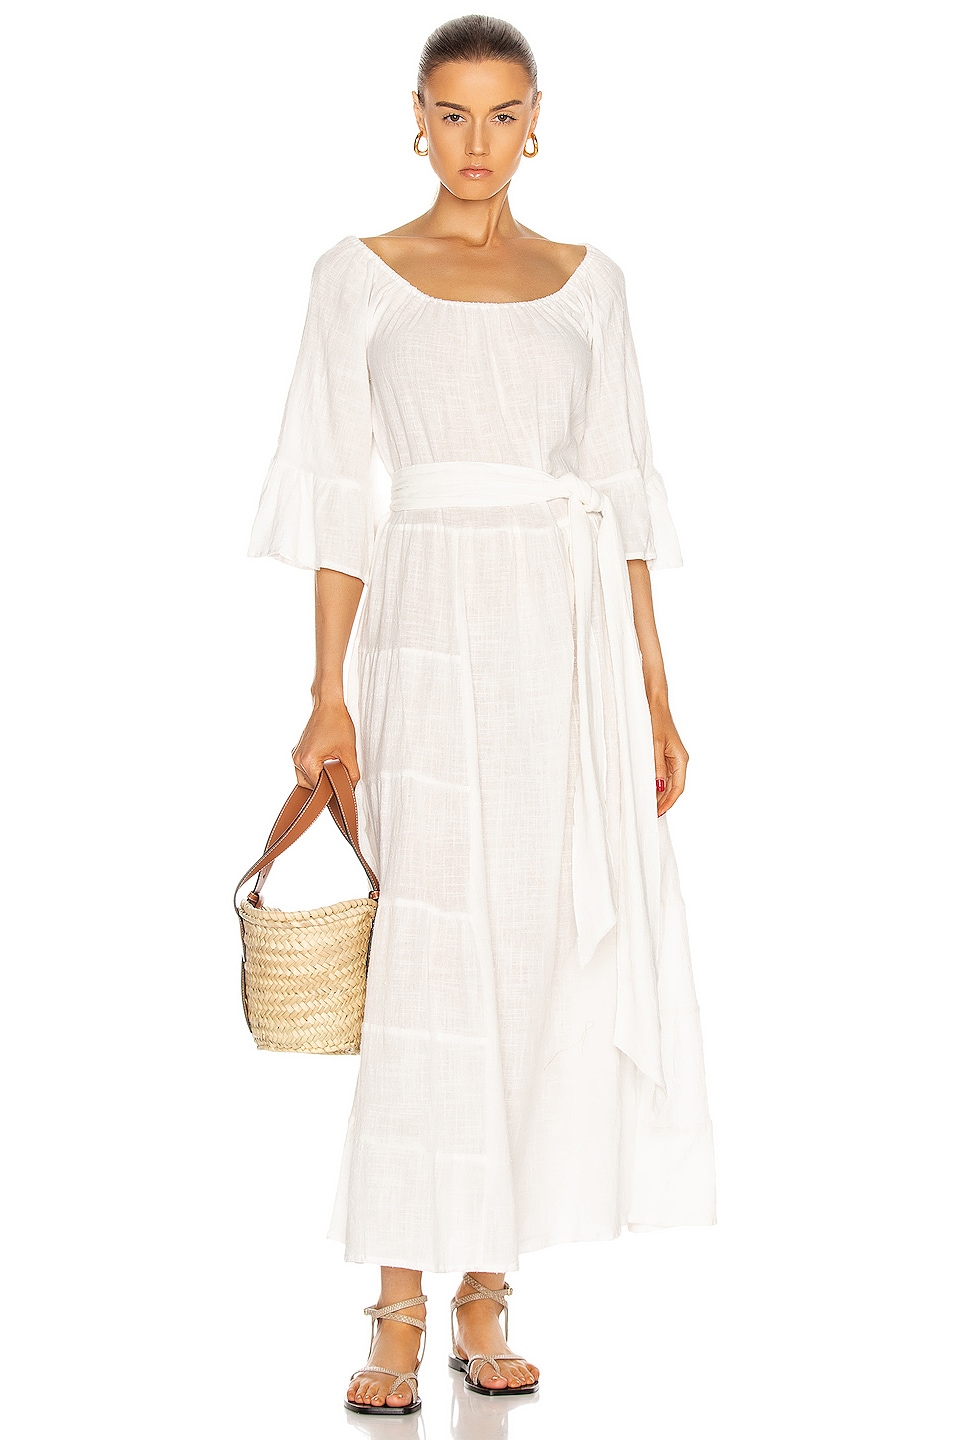 Image 1 of Natalie Martin Mesa Maxi Dress in White Cotton Gauze